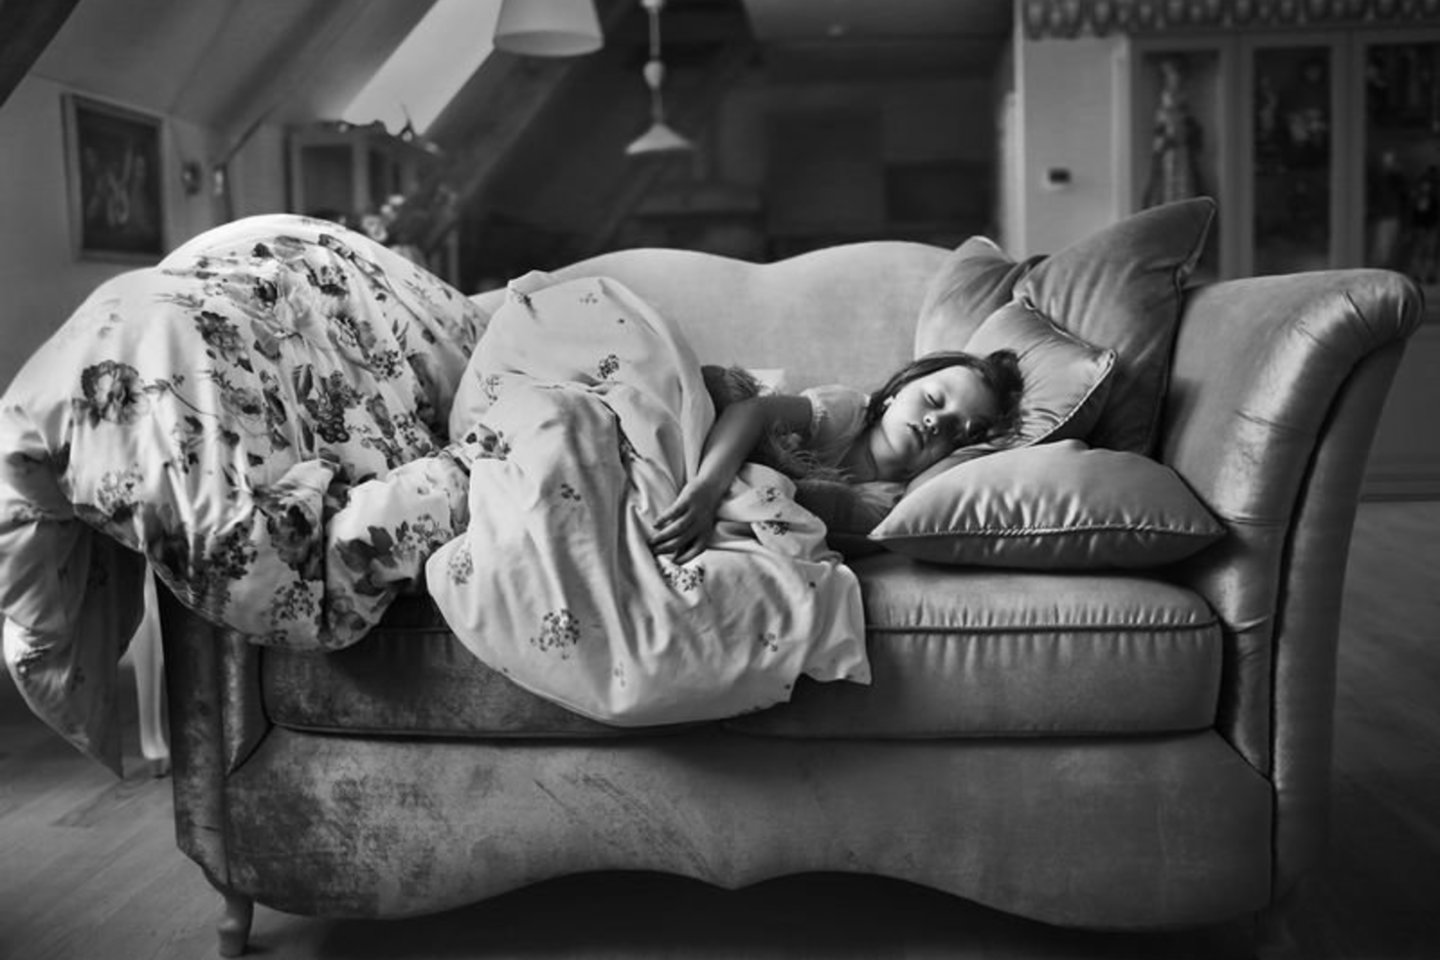  Fotomenininkė Viktorija Vaišvilaitė atveria duris į savo fotografijos archyvus ir į kambarius, pasakojančius ypatingas istorijas.<br>Viktorijos Vaišvilaitės nuotr.